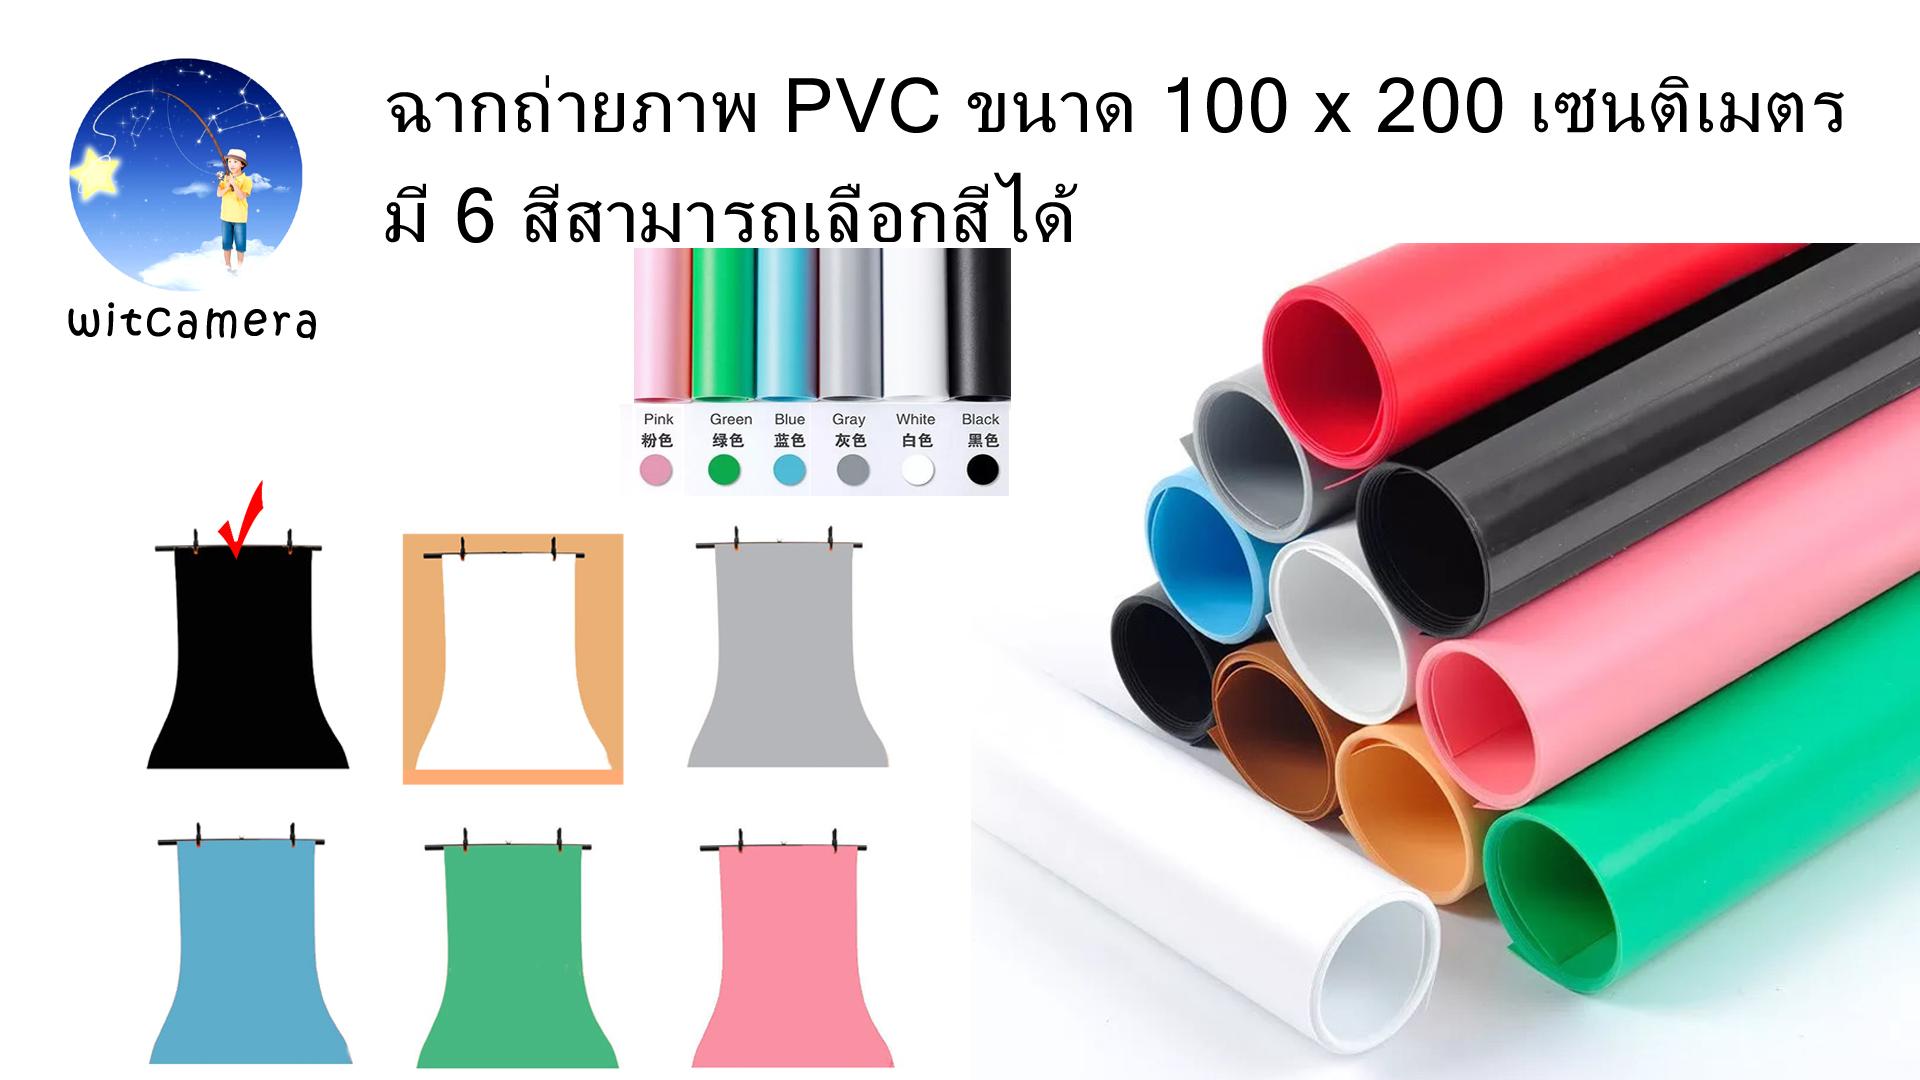 ฉากถ่ายภาพ PVC ขนาด 100 x 200 เซนติเมตร มี 6 สีสามารถเลือกสีได้ PVC photo studio backdrop 100 x 200cm have 6 colors for choose